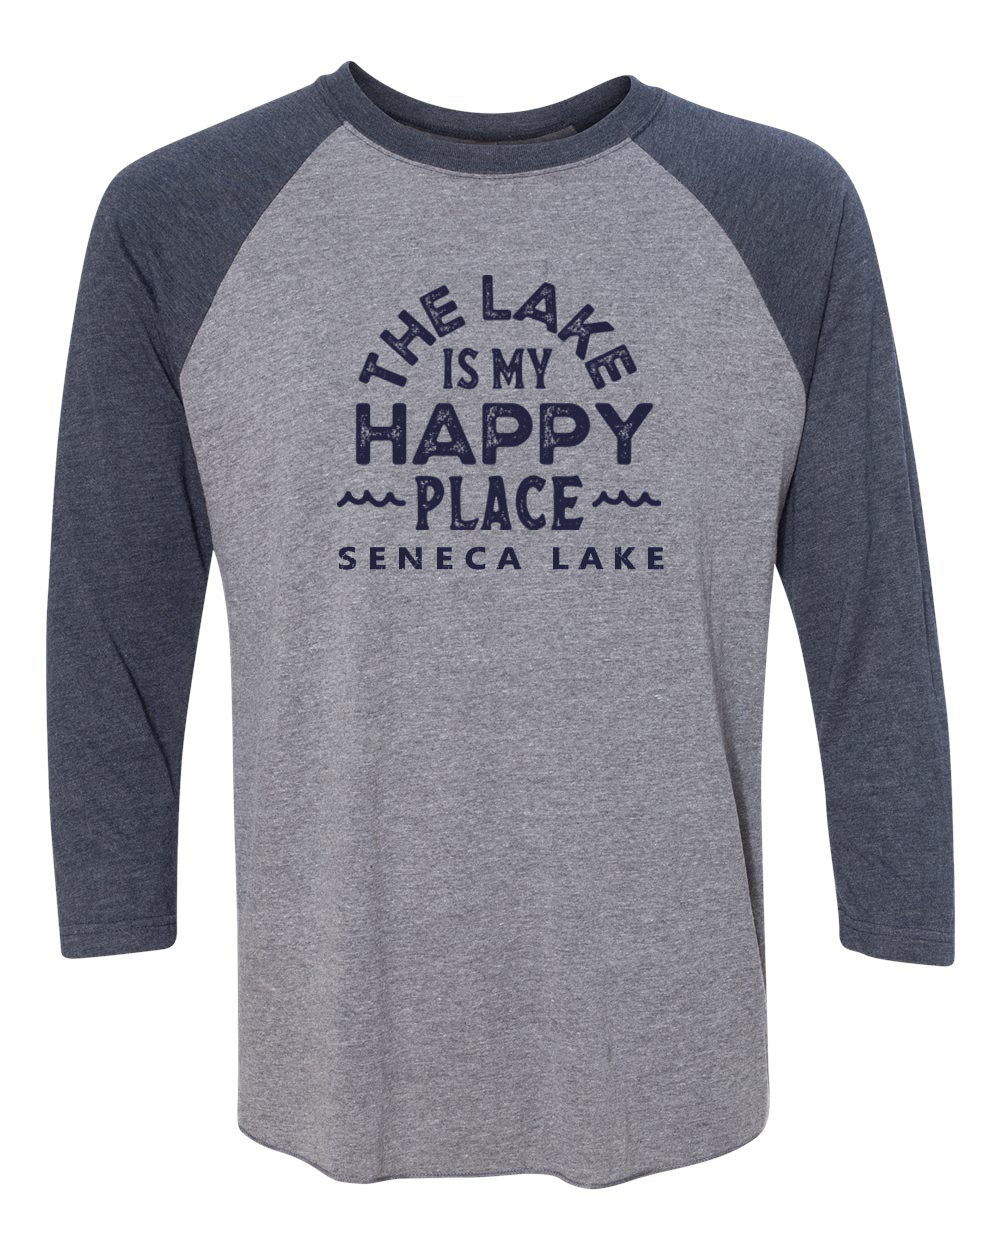 Seneca Lake design 4 raglan shirt